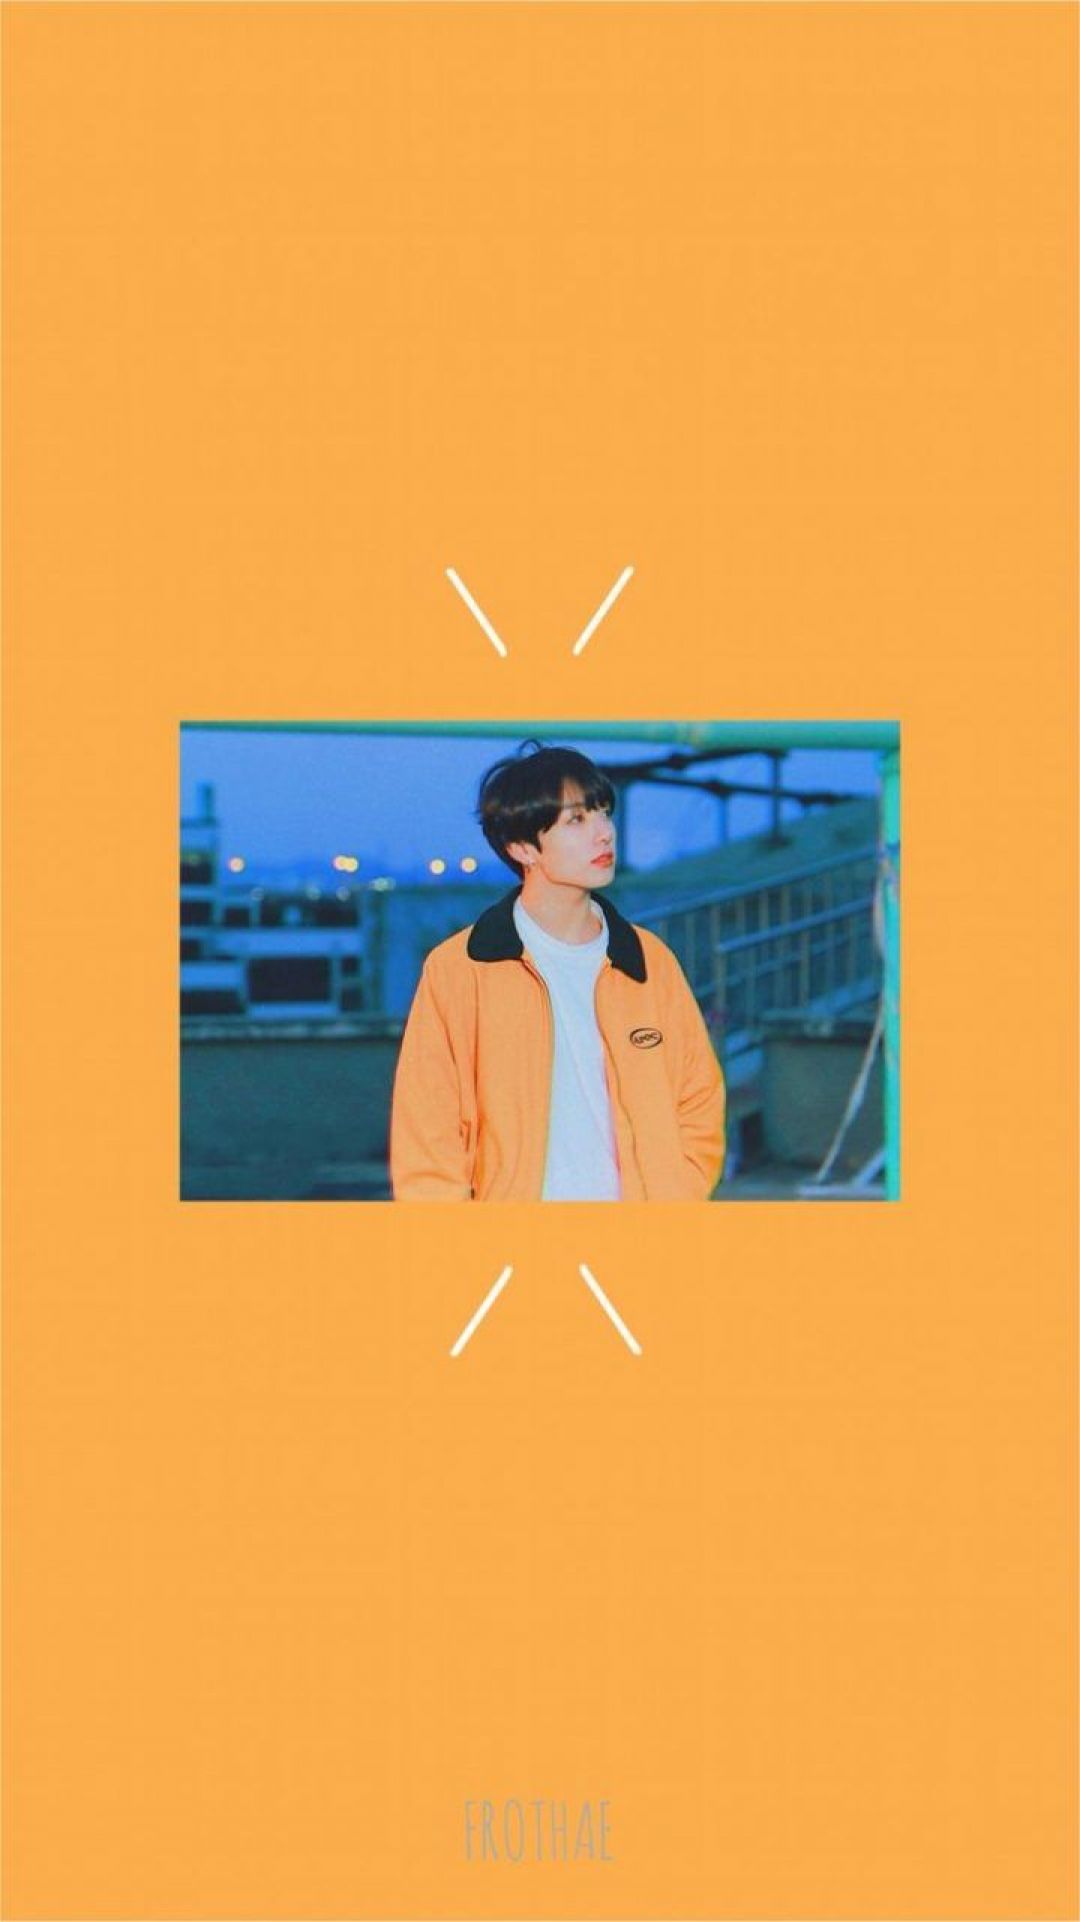 Orange Bts Aesthetic - Jungkook Euphoria - HD Wallpaper 